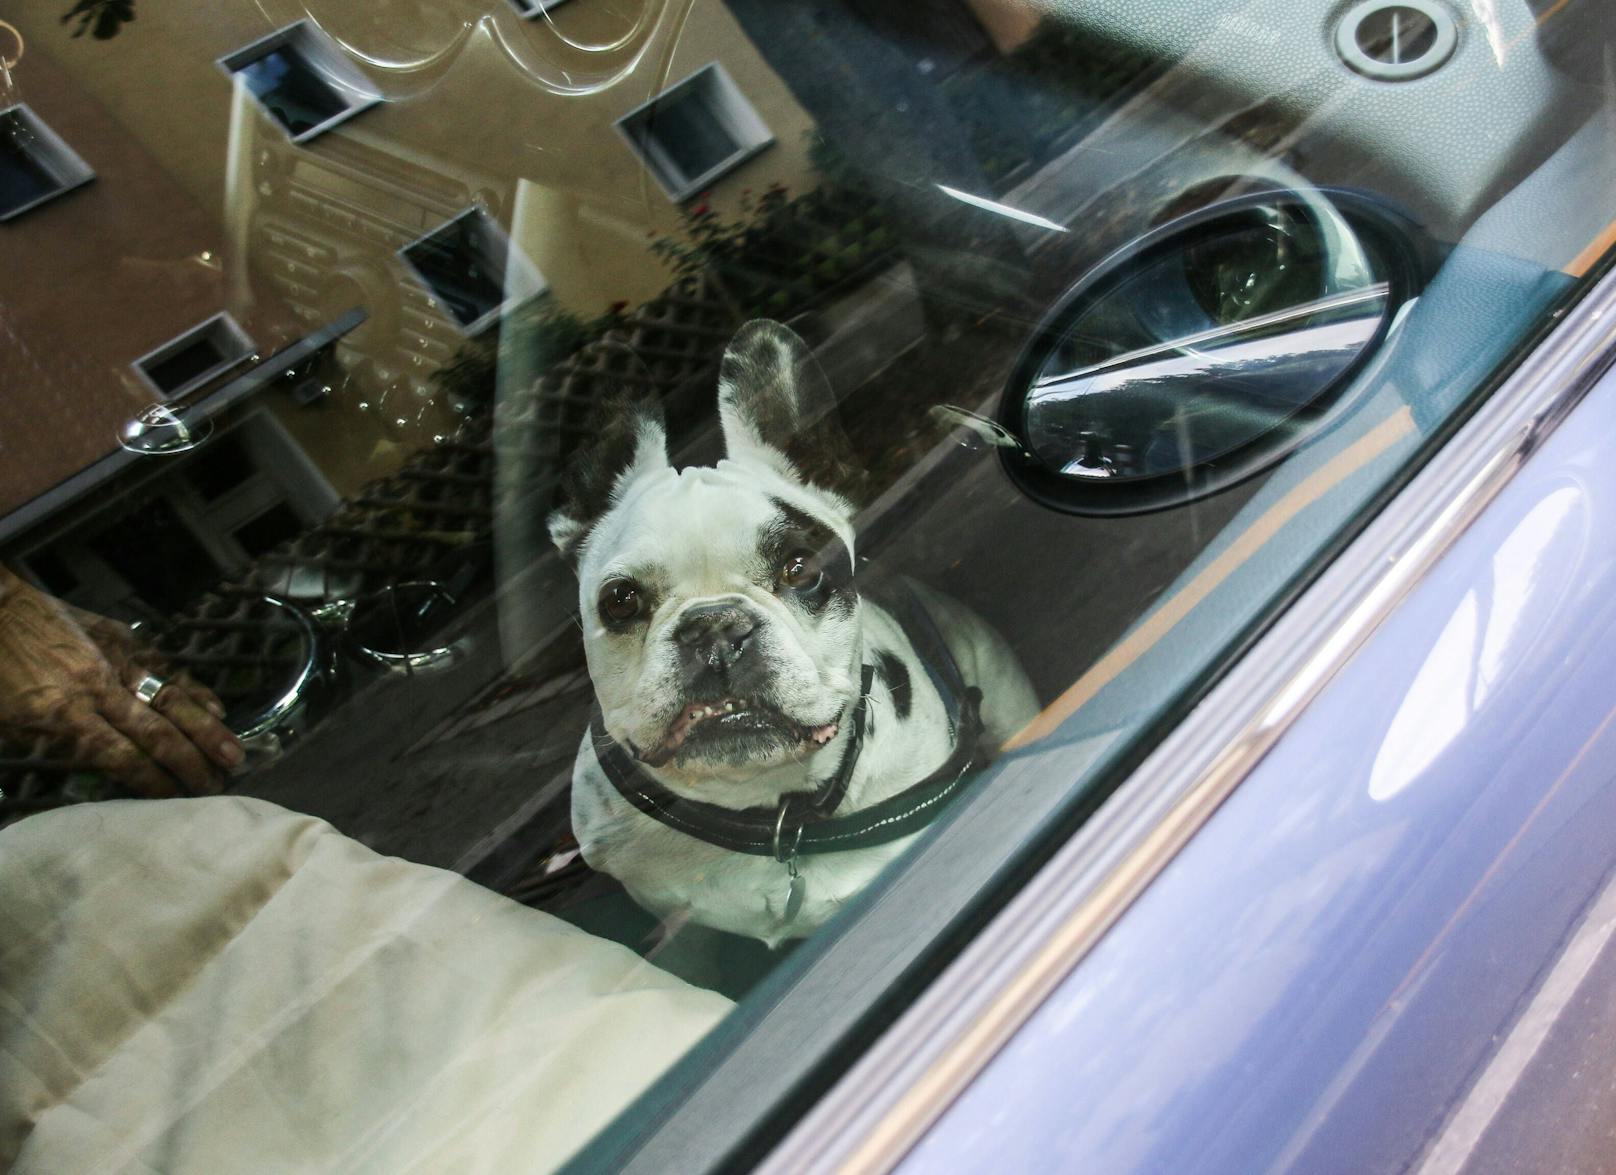 Im Sommer wird es in geschlossenen Autos schnell gefährlich heiß. Hunde und Kinder sollten deshalb nie in Autos zurückgelassen werden. (Symbolbild)